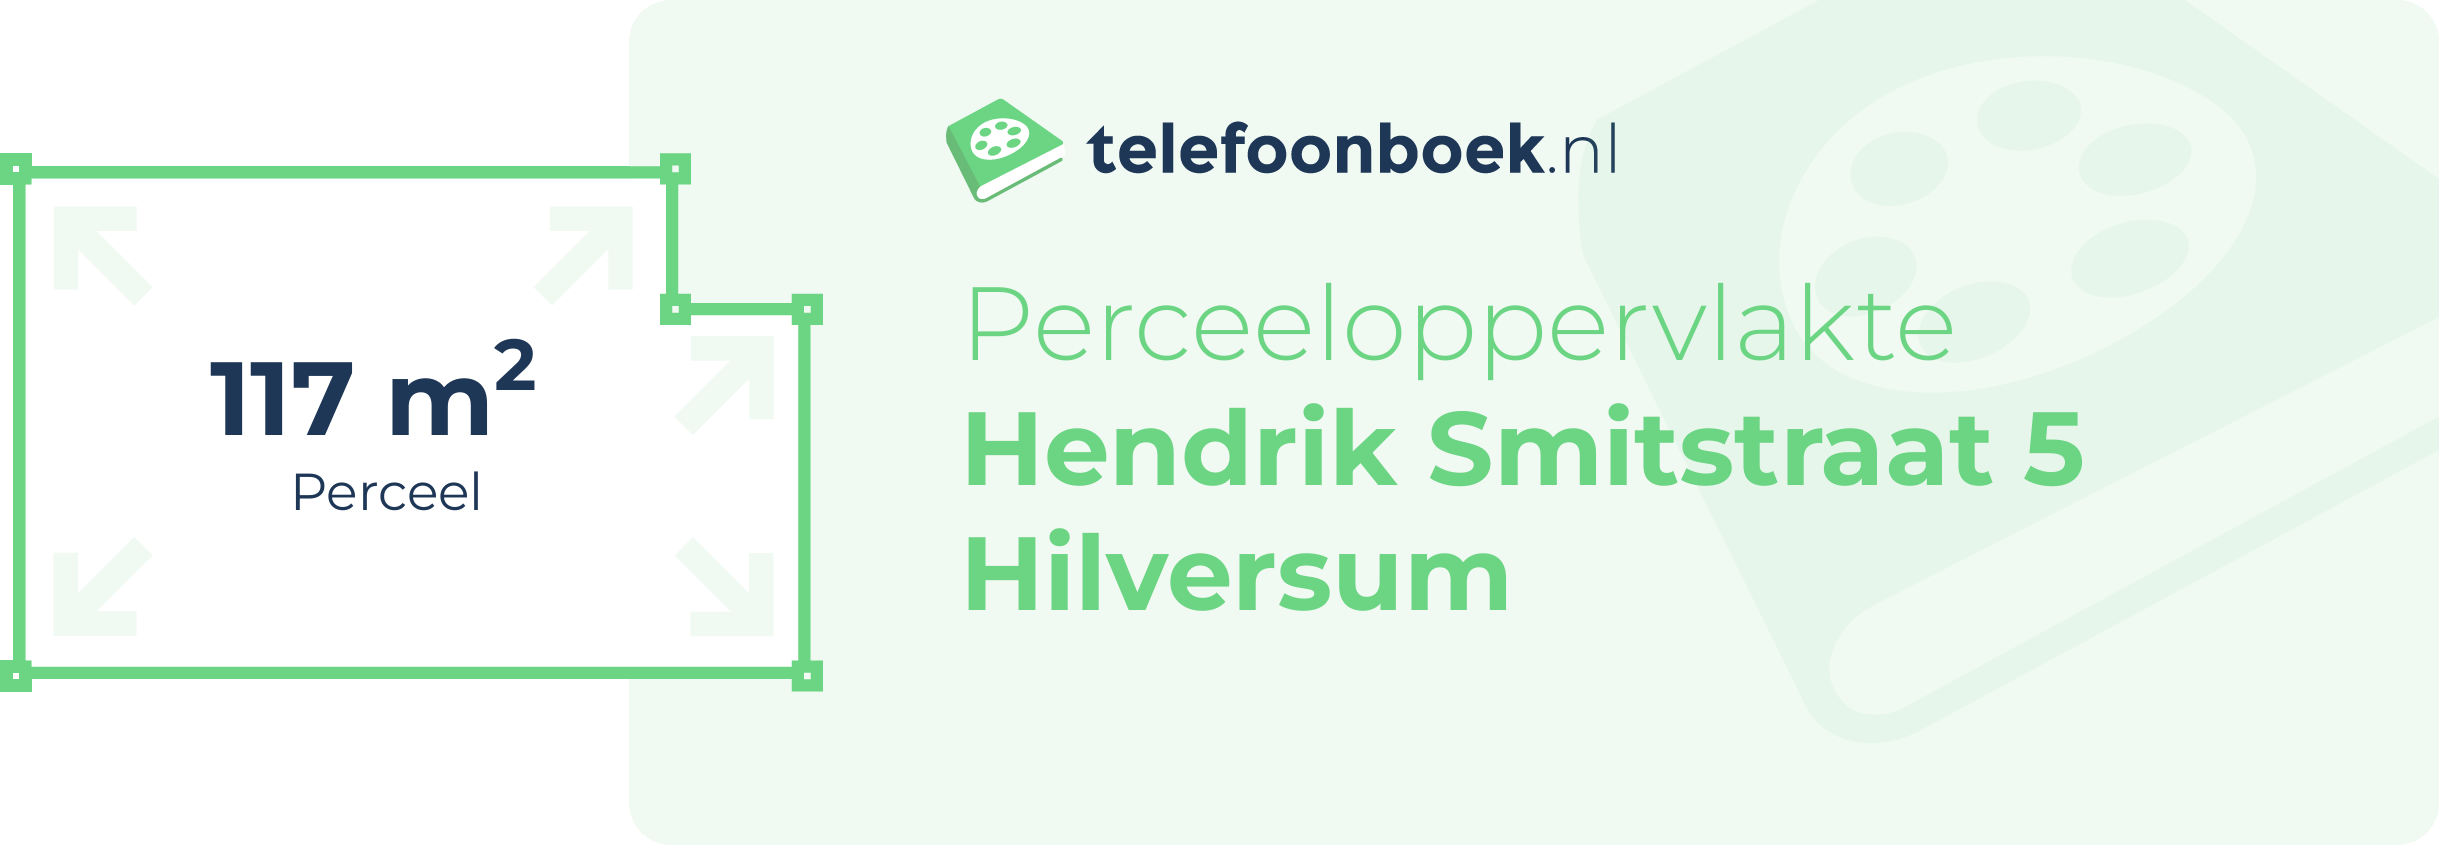 Perceeloppervlakte Hendrik Smitstraat 5 Hilversum